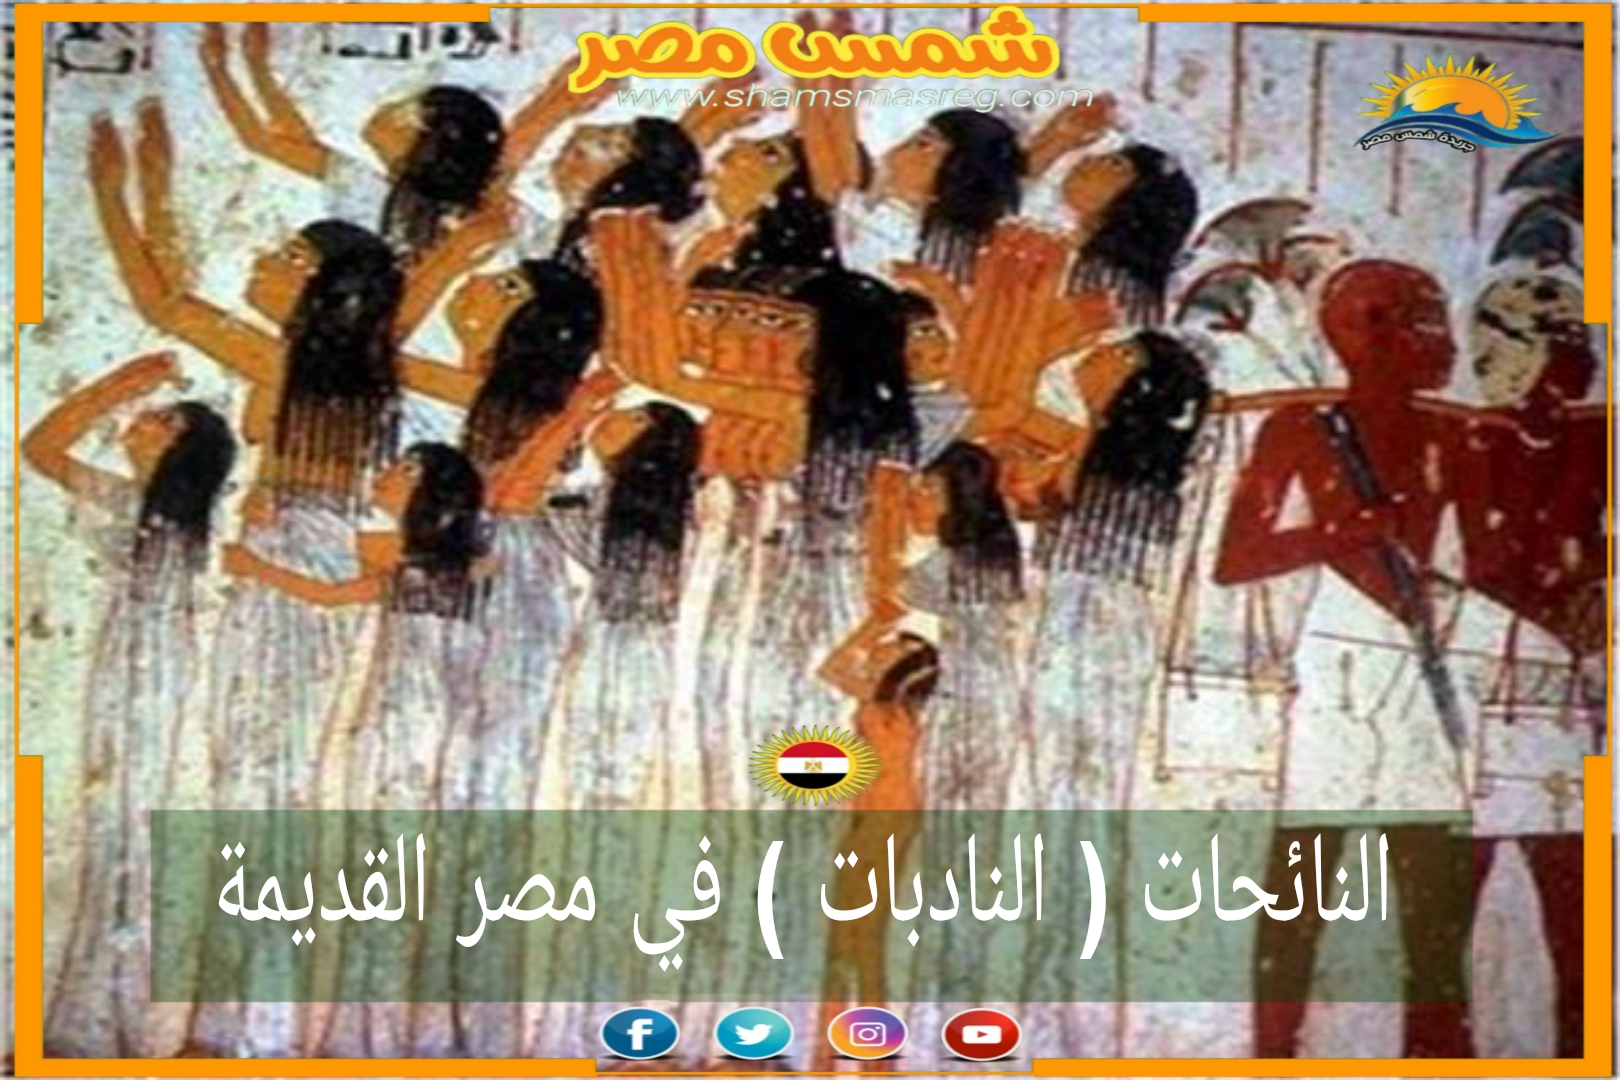 شمس مصر /النائحات (النادبات) في مصر القديمة